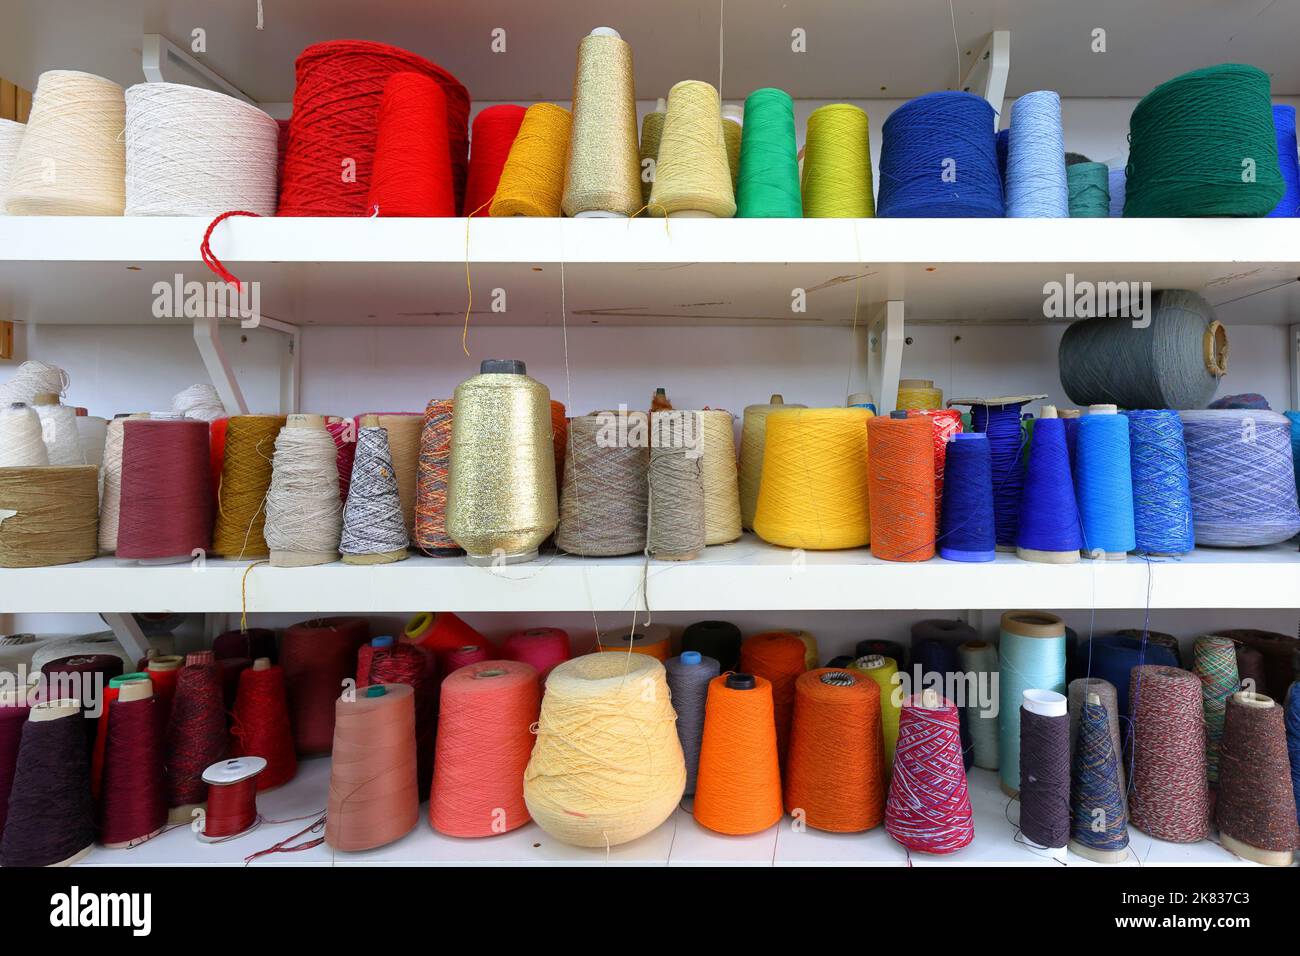 Coni e rocchetti di filo da cucire colorato organizzati per colore rosso, arancione, giallo, blu Foto Stock